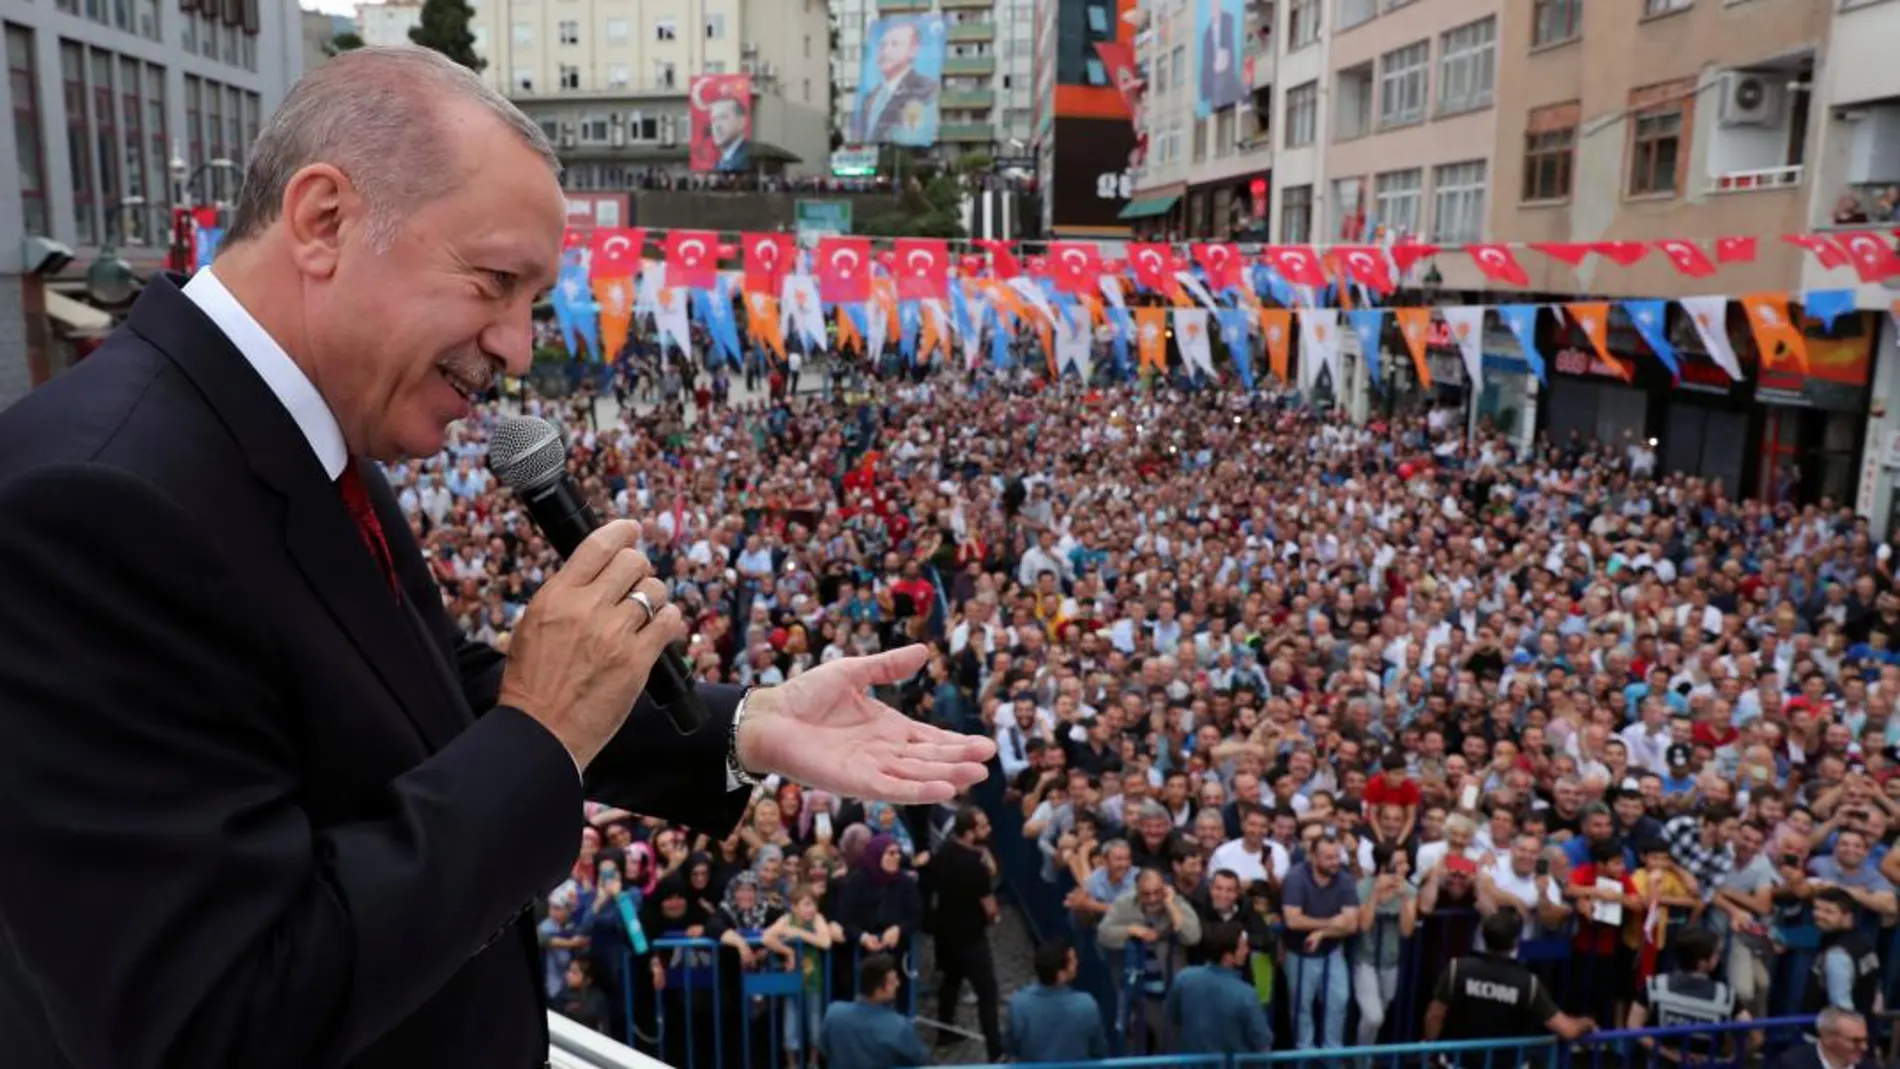 El presidente de Turquía, Recep Tayyip Erdogan. Foto: AP